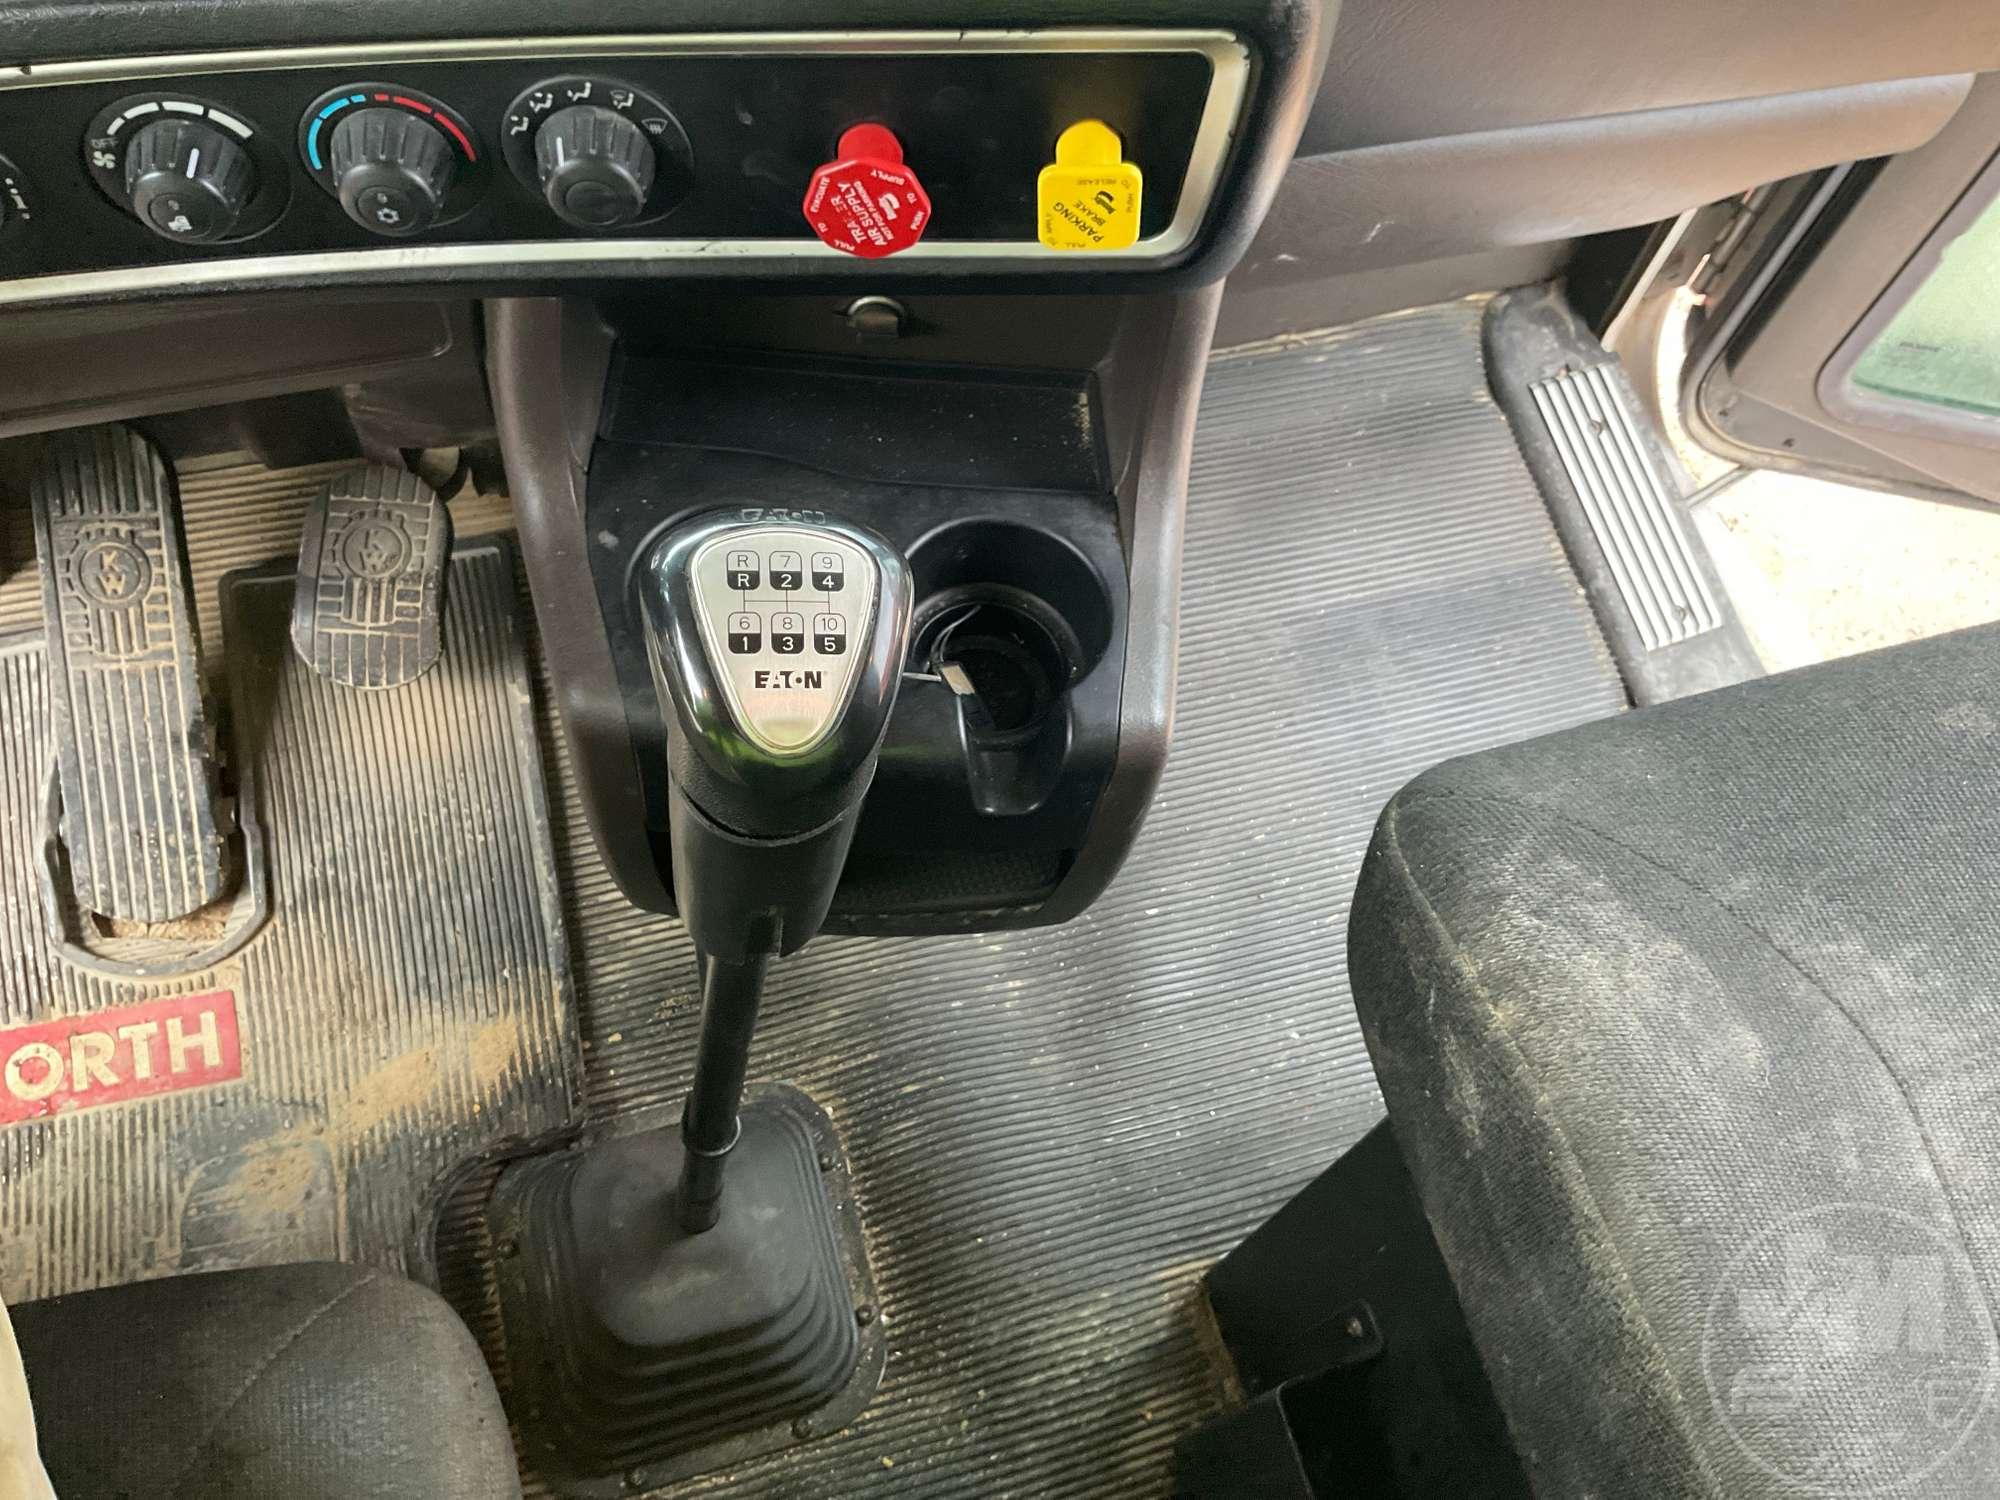 2019 KENWORTH W900 SERIES TANDEM AXLE DAY CAB TRUCK TRACTOR VIN: 1XKWD49X8KJ245832